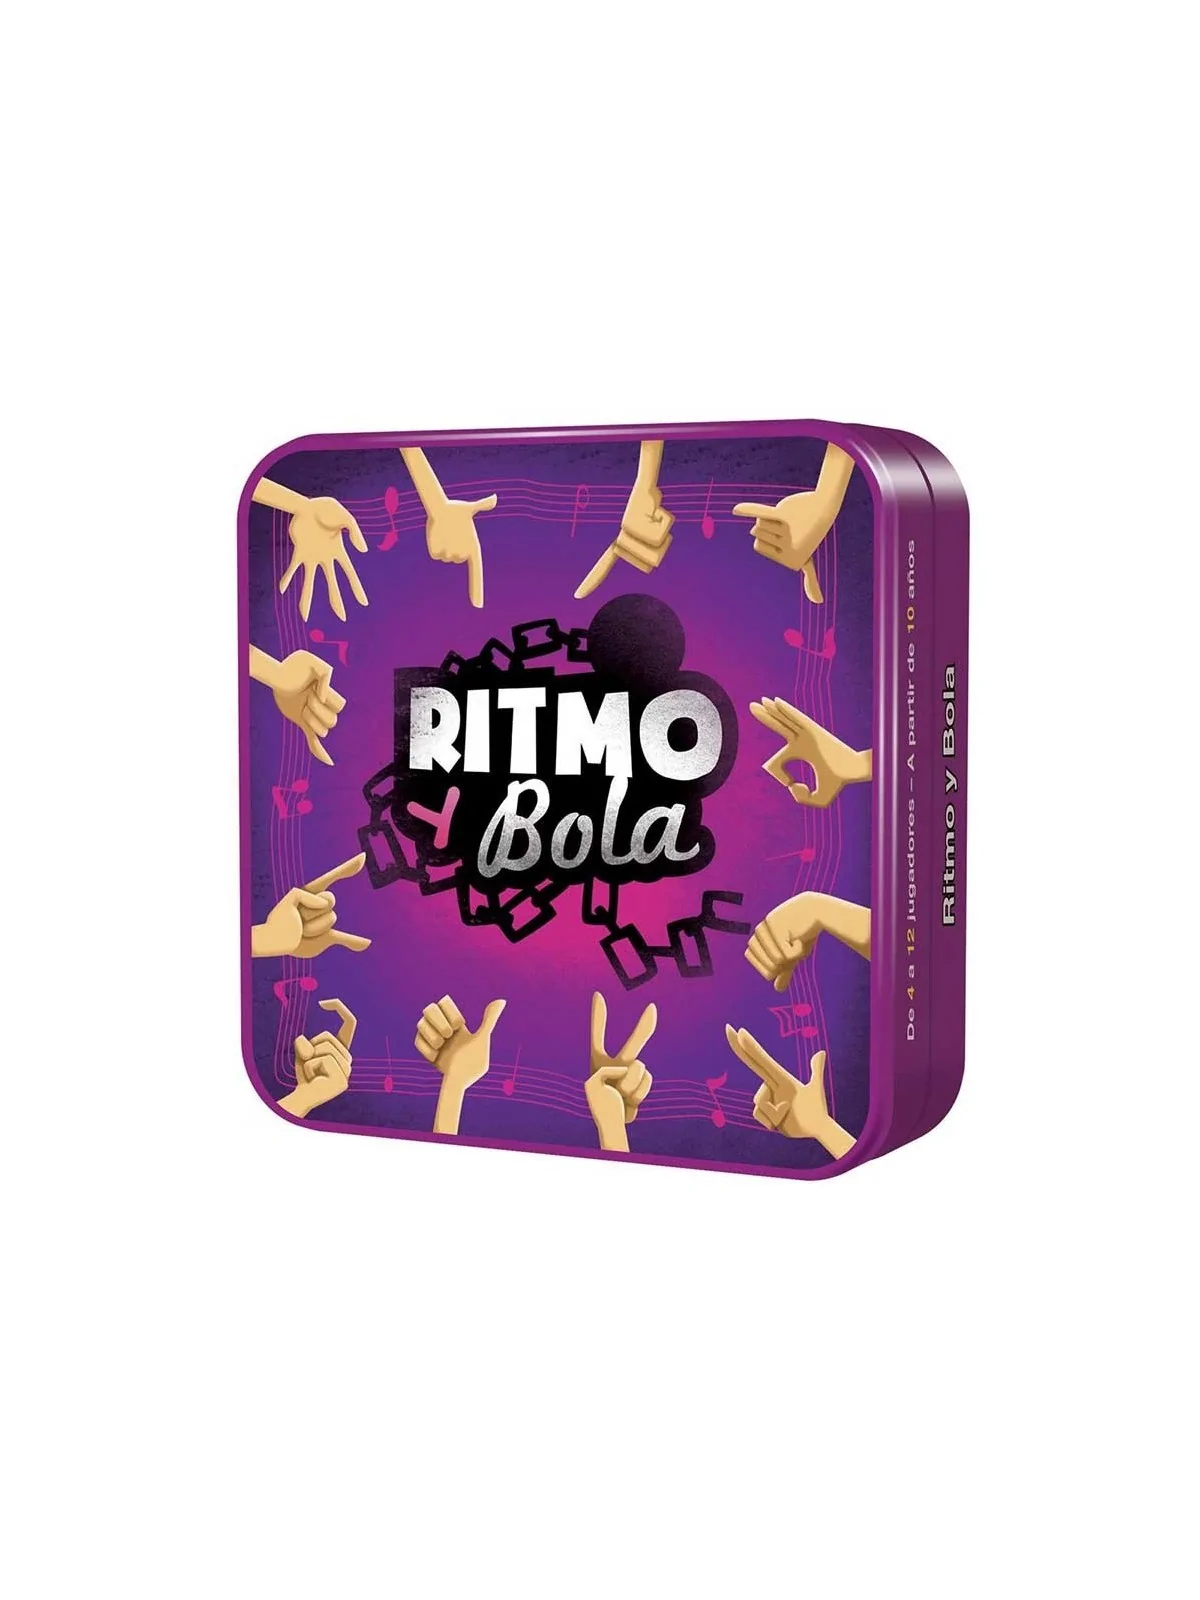 Comprar Ritmo y Bola barato al mejor precio 9,00 € de Cocktail Games